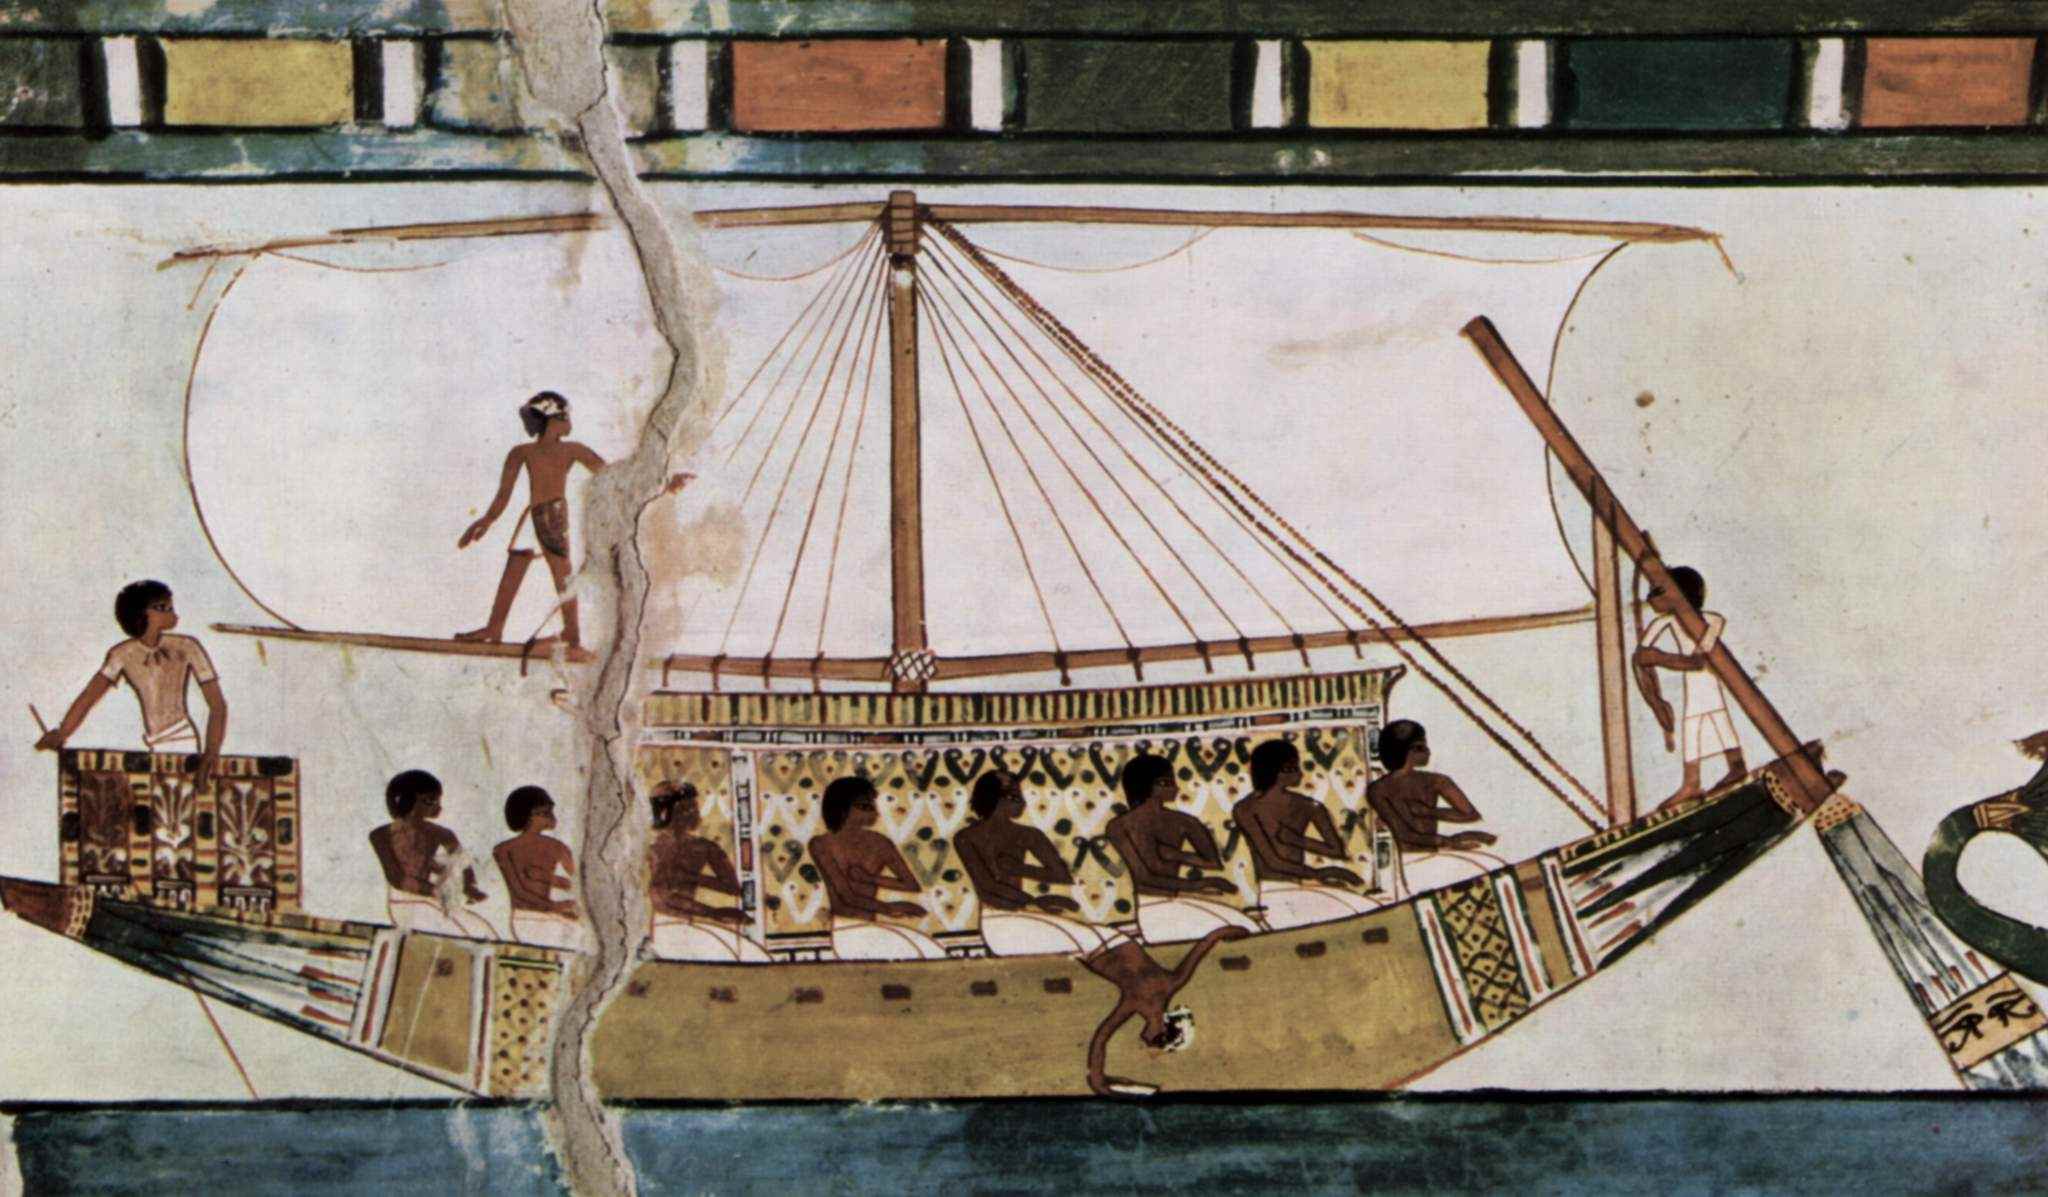 آسٹریلیا میں 5,000 سال قدیم مصری ہیروگلیفس پائے گئے: کیا تاریخ غلط ہے؟ 5